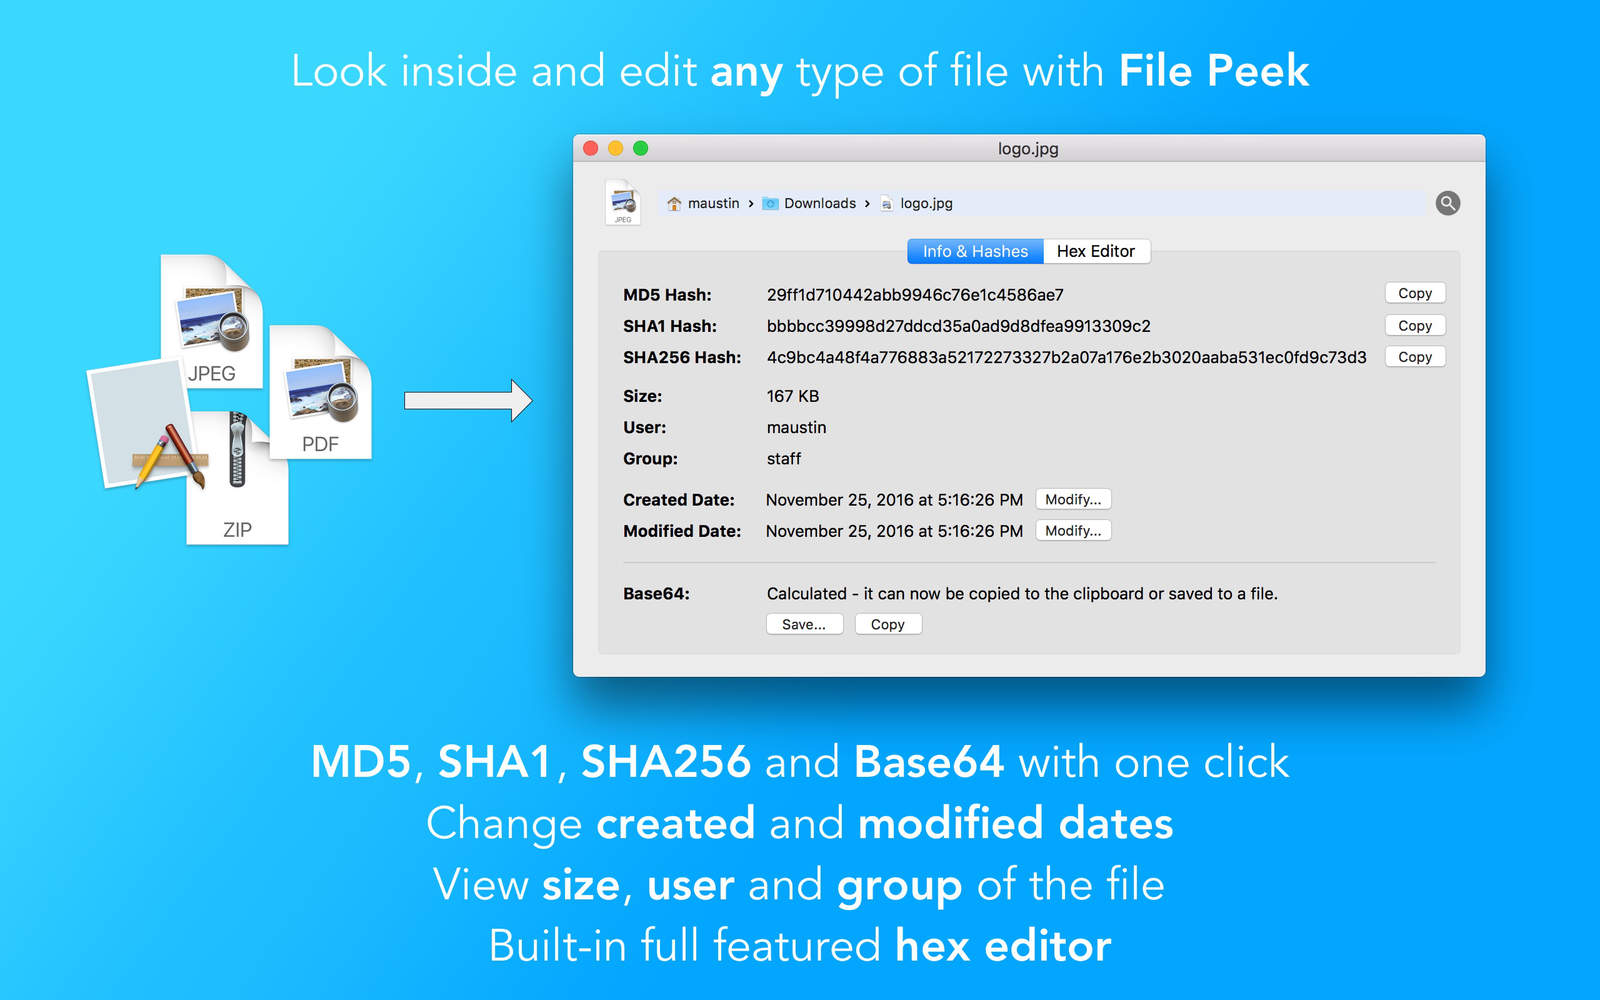 File Peek 1.0 : Main Window